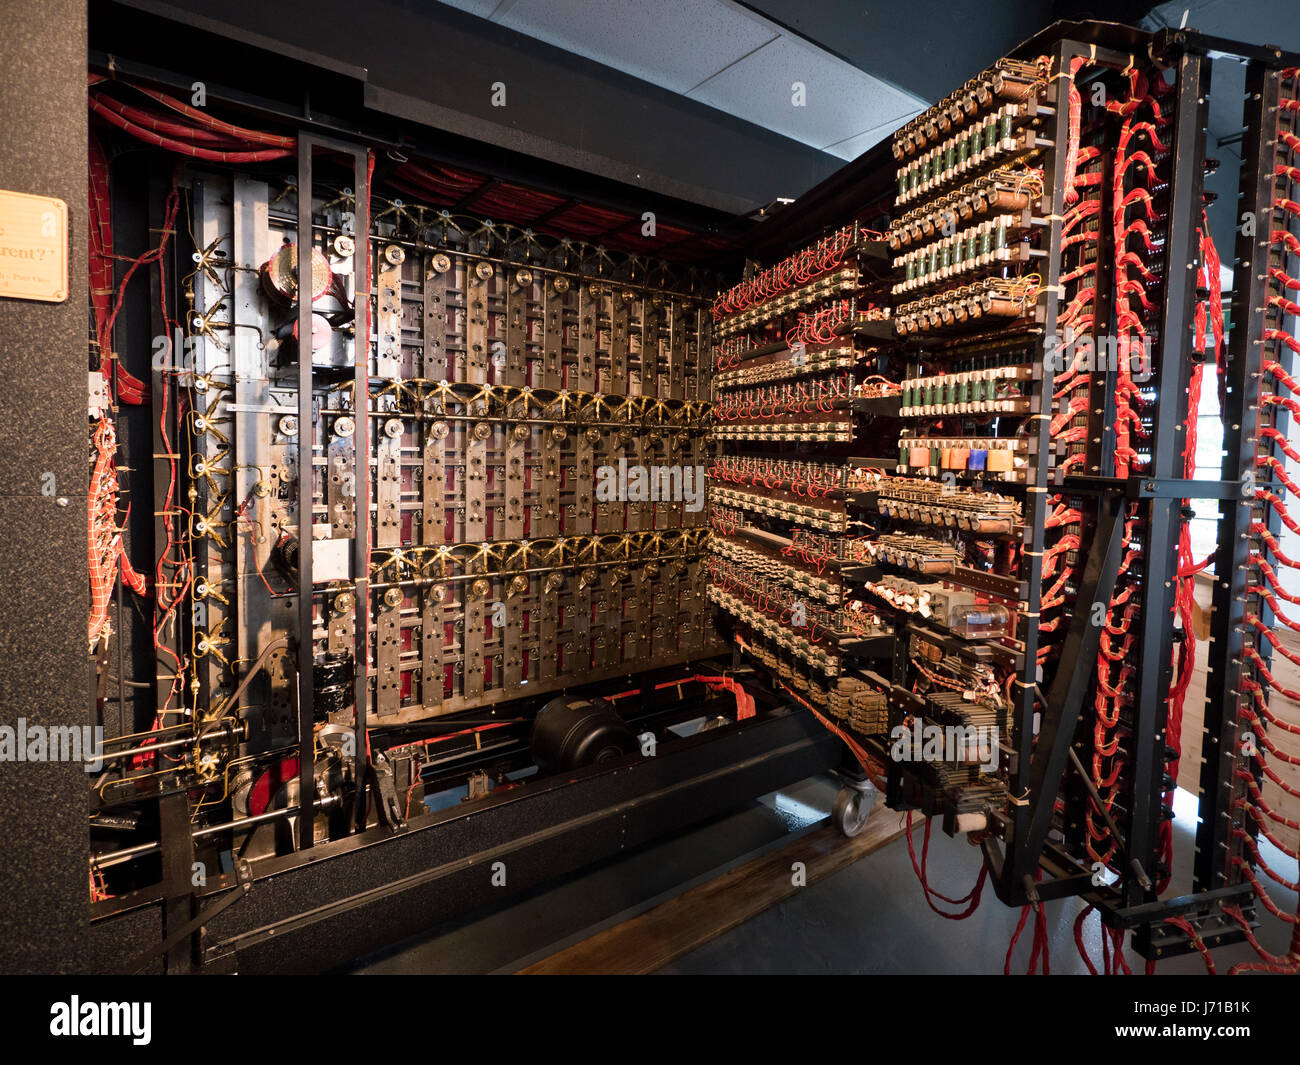 Un groupe de reconstitution de la machine de Turing ou bombe au domicile de l'WWll décrypteurs à Bletchley Park en Angleterre. Banque D'Images